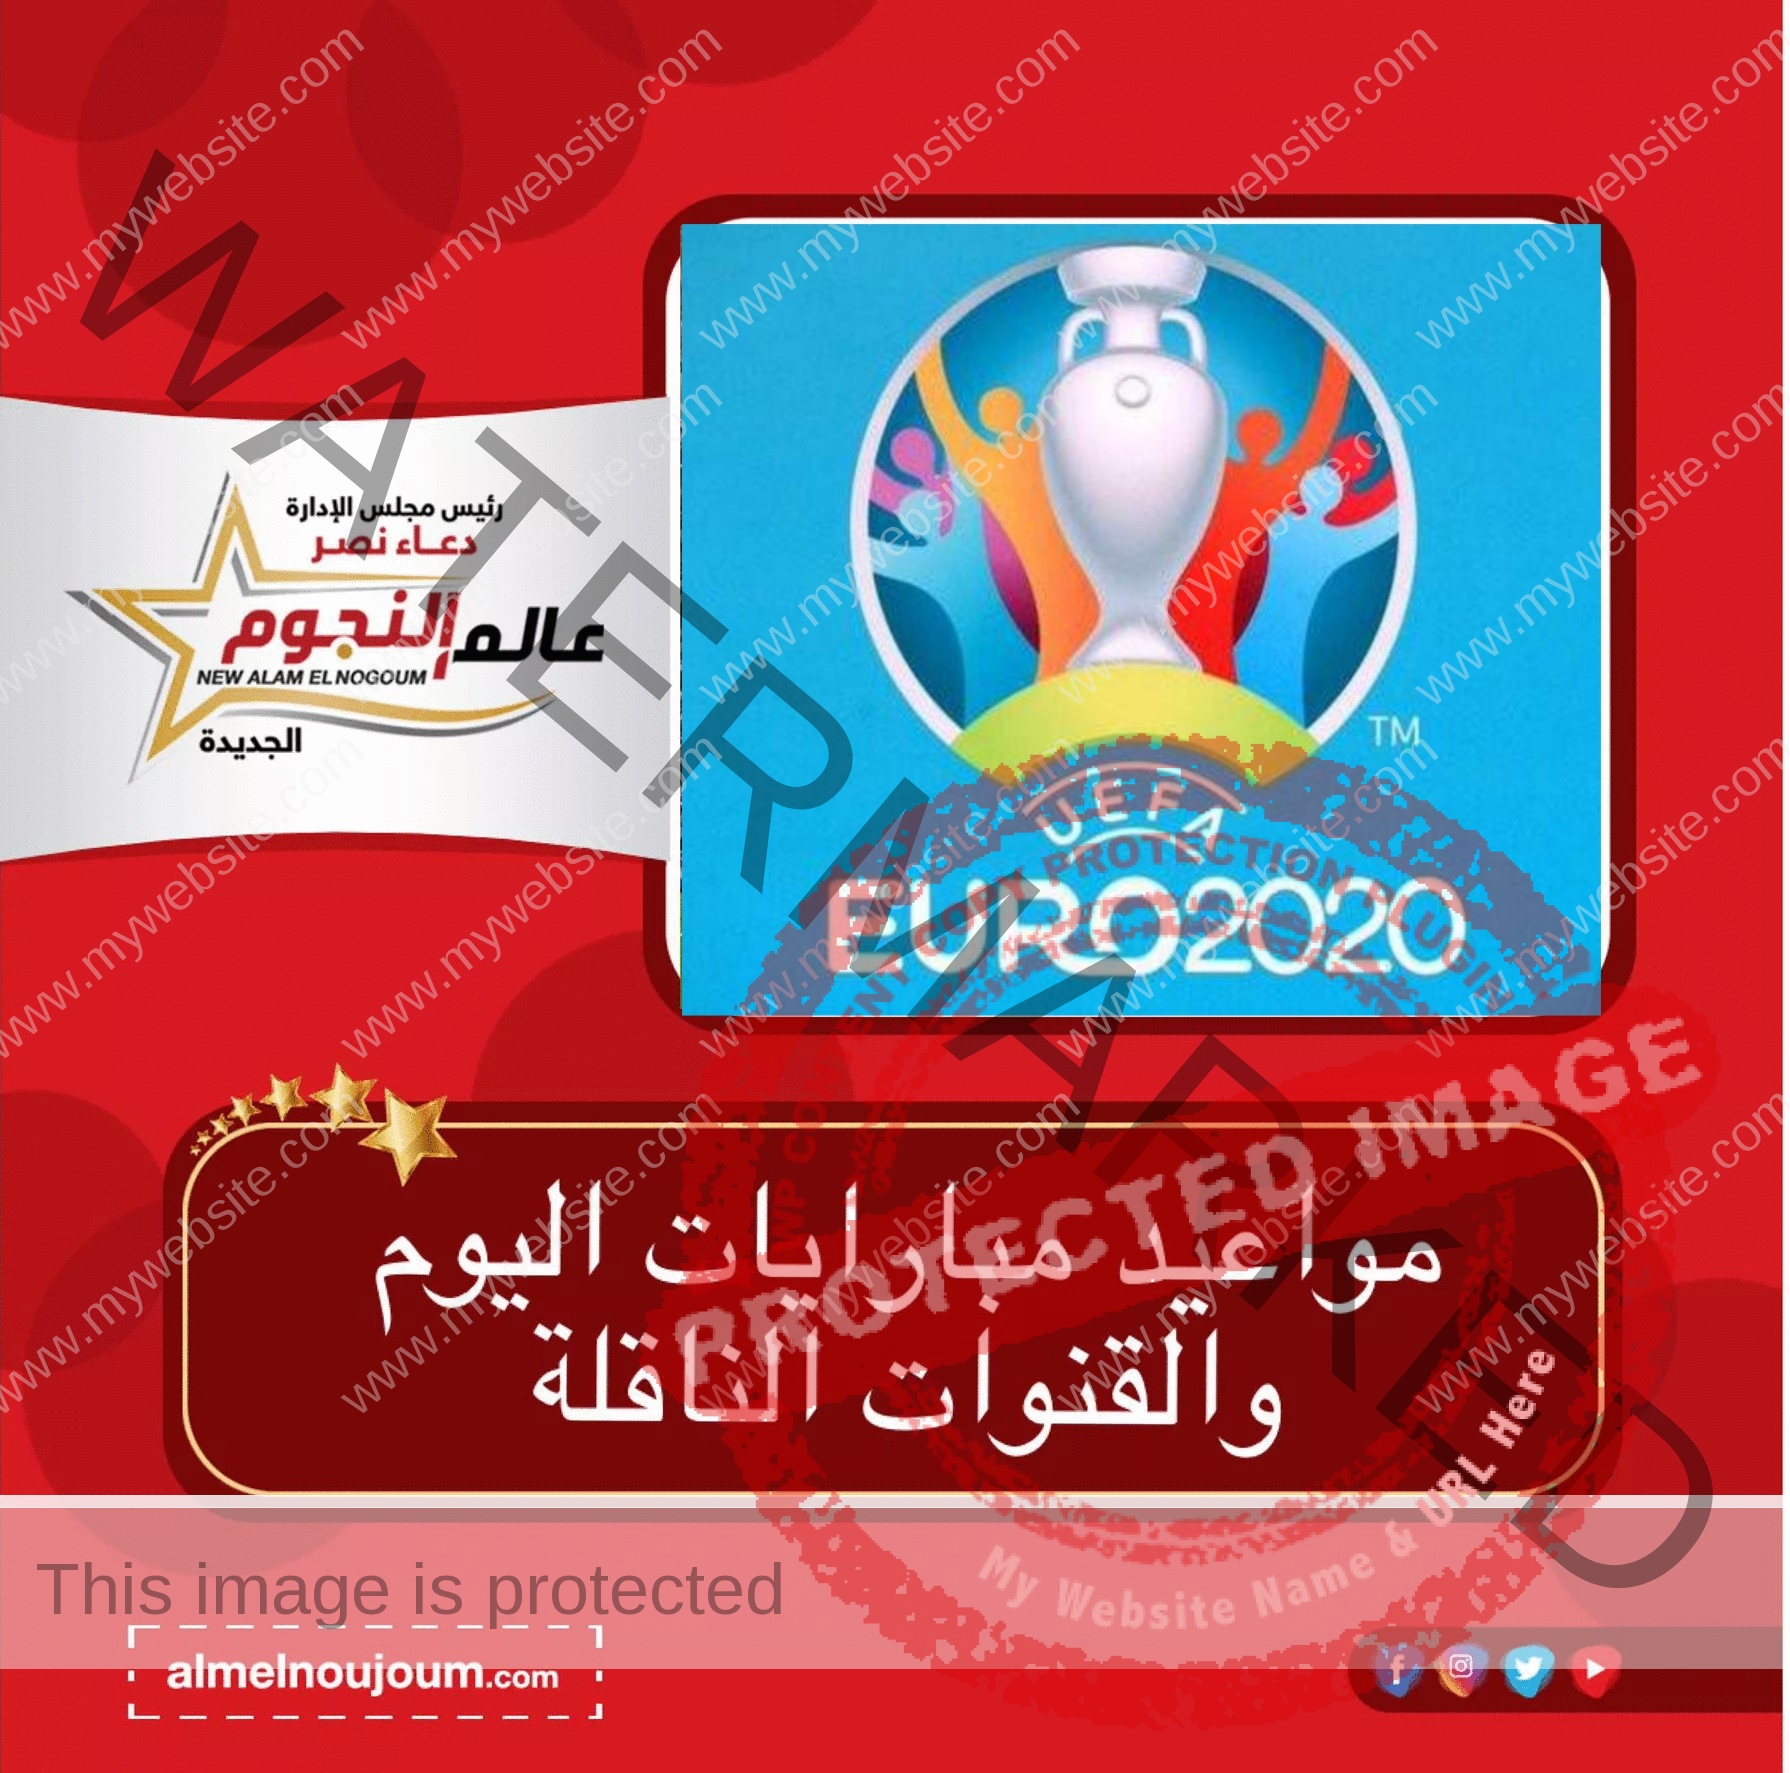 مواعيد مباريات اليوم في كاس الامم الاوروبية " يورو 2020 "